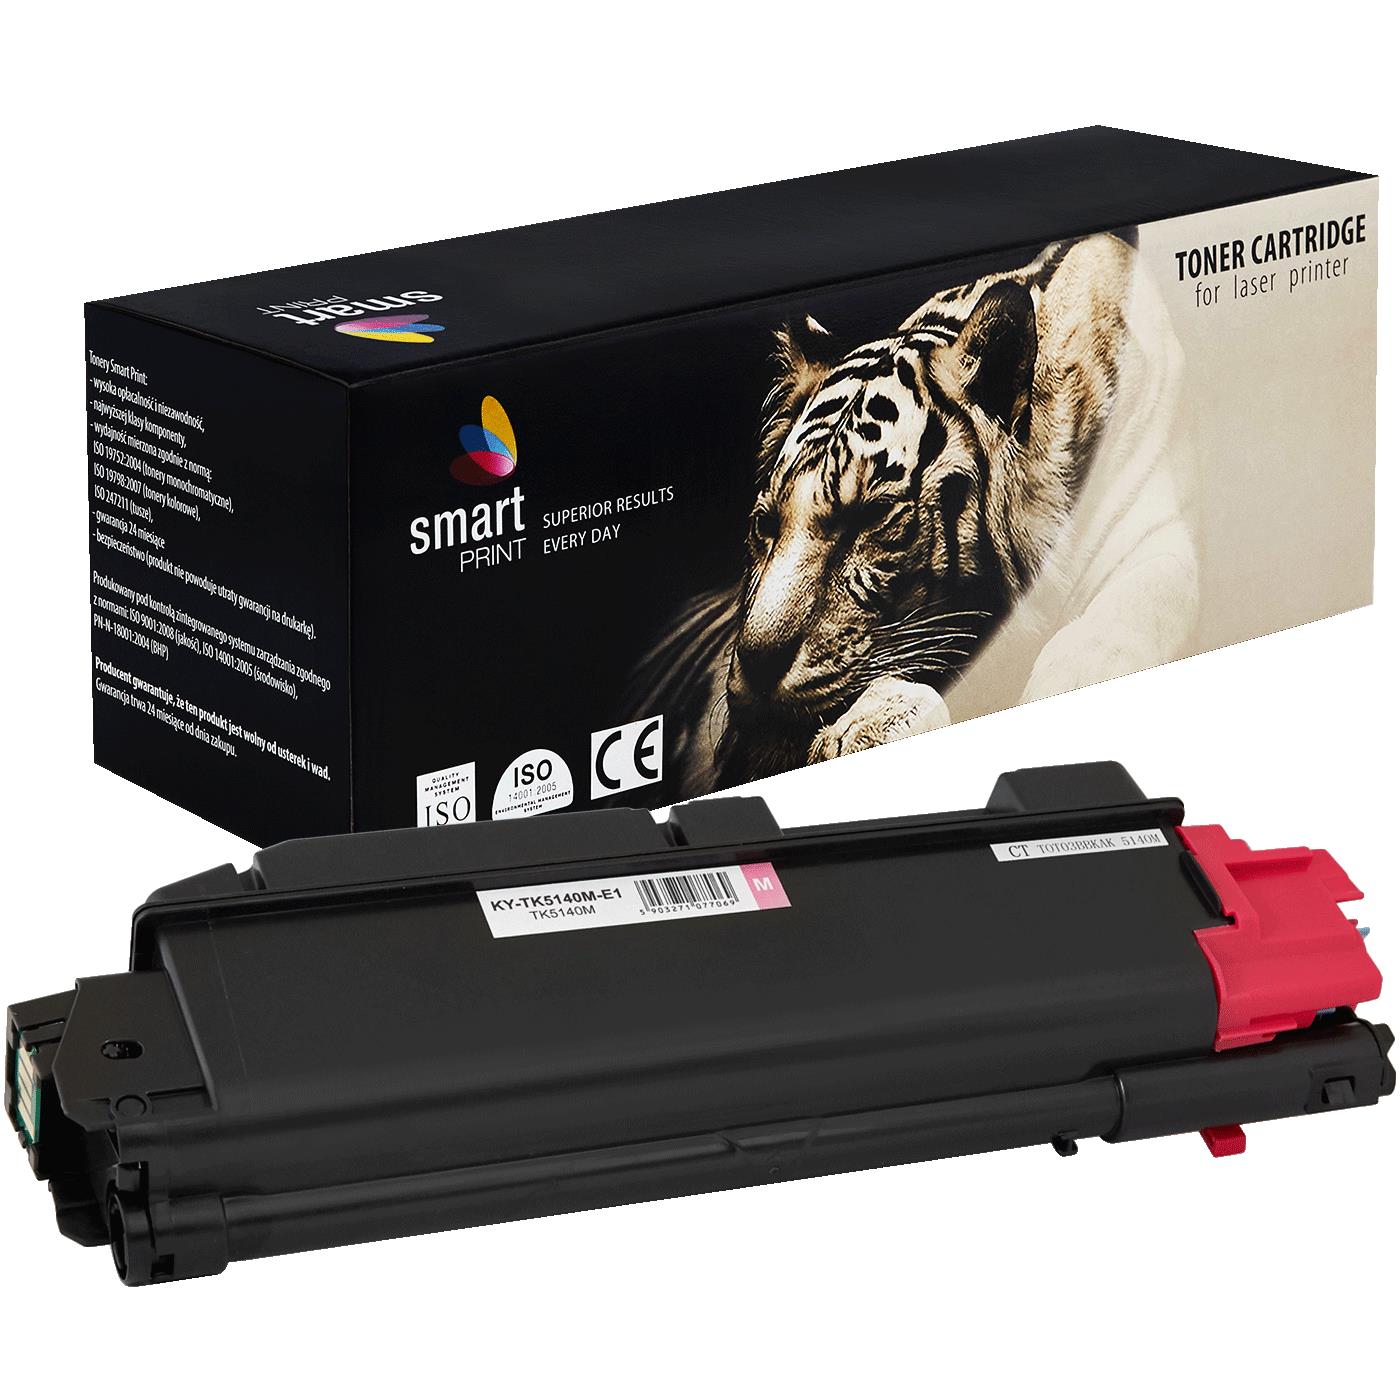 съвместима тонер касета за принтери и печатащи устройства на Kyocera Mita Kyocera: M6030 CDN, M6530 CDN,  P6130 CDN,  new new Toner KY-TK5140M | TK5140M. Ниски цени, прецизно изпълнение, високо качество.